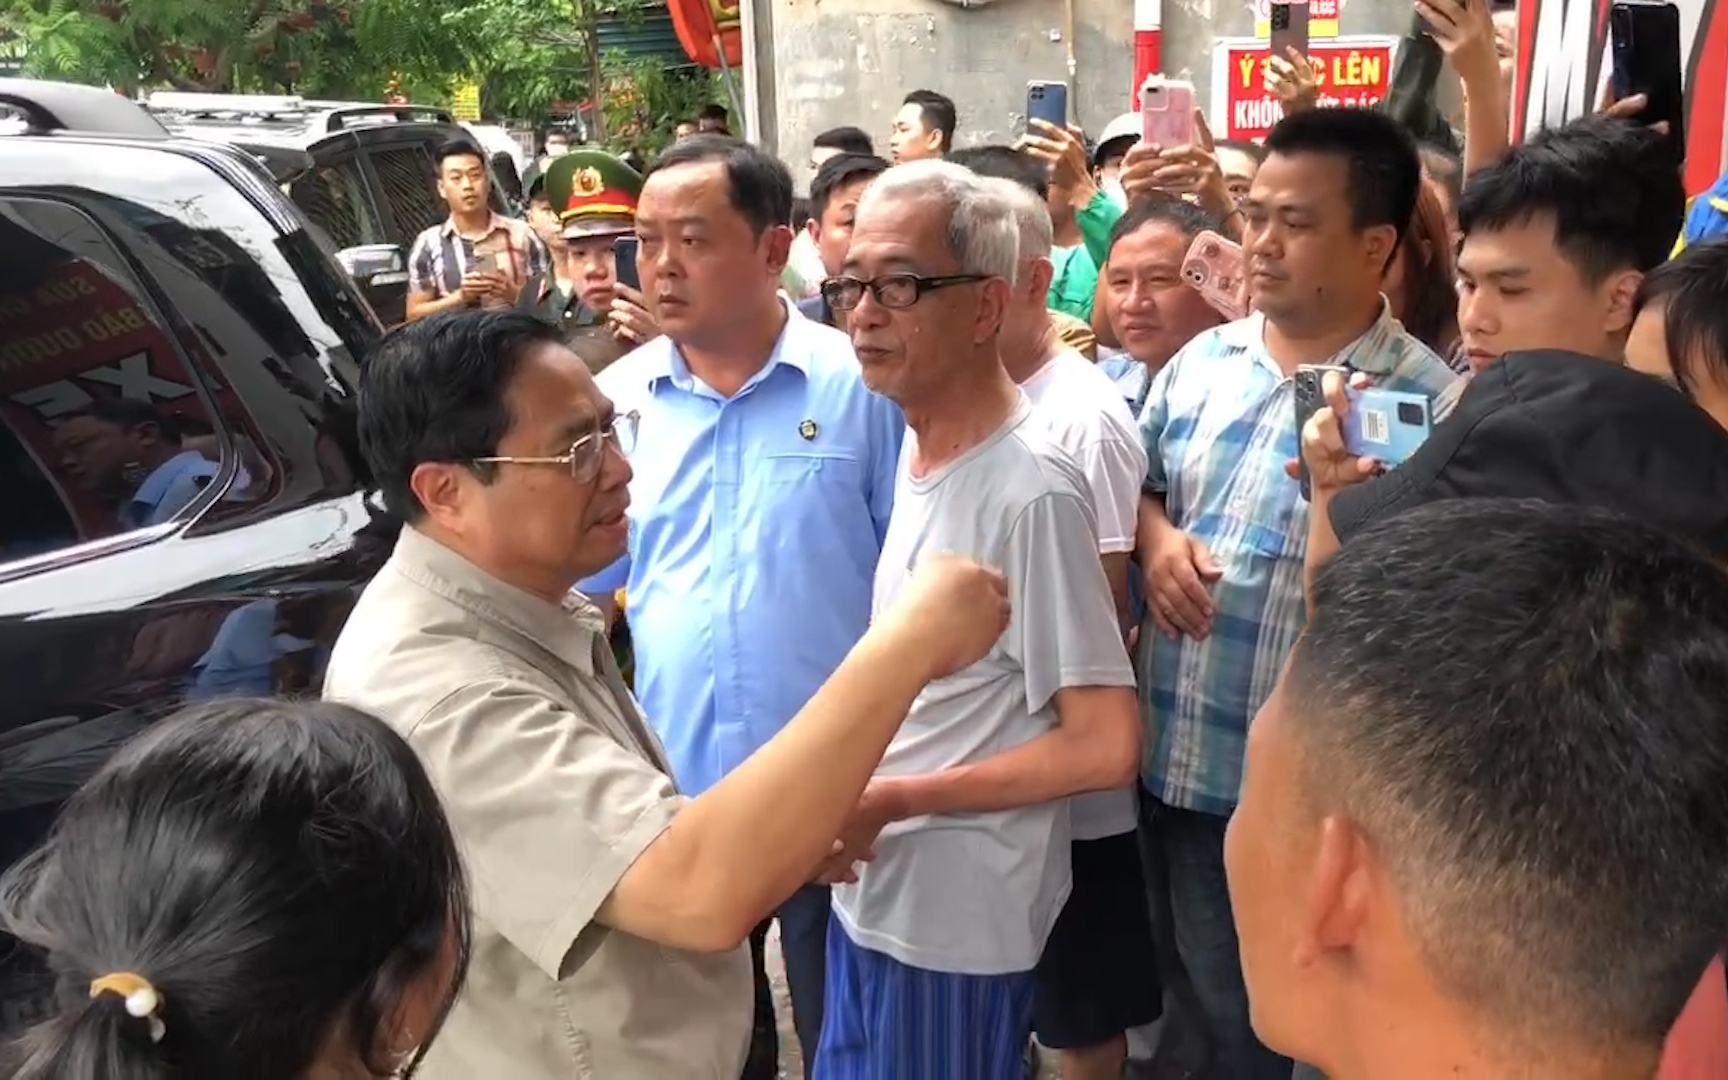 Video: Thủ tướng Phạm Minh Chính tới hiện trường cháy chung cư mini ở Hà Nội, nhắc người dân 4 điều để PCCC cho tốt